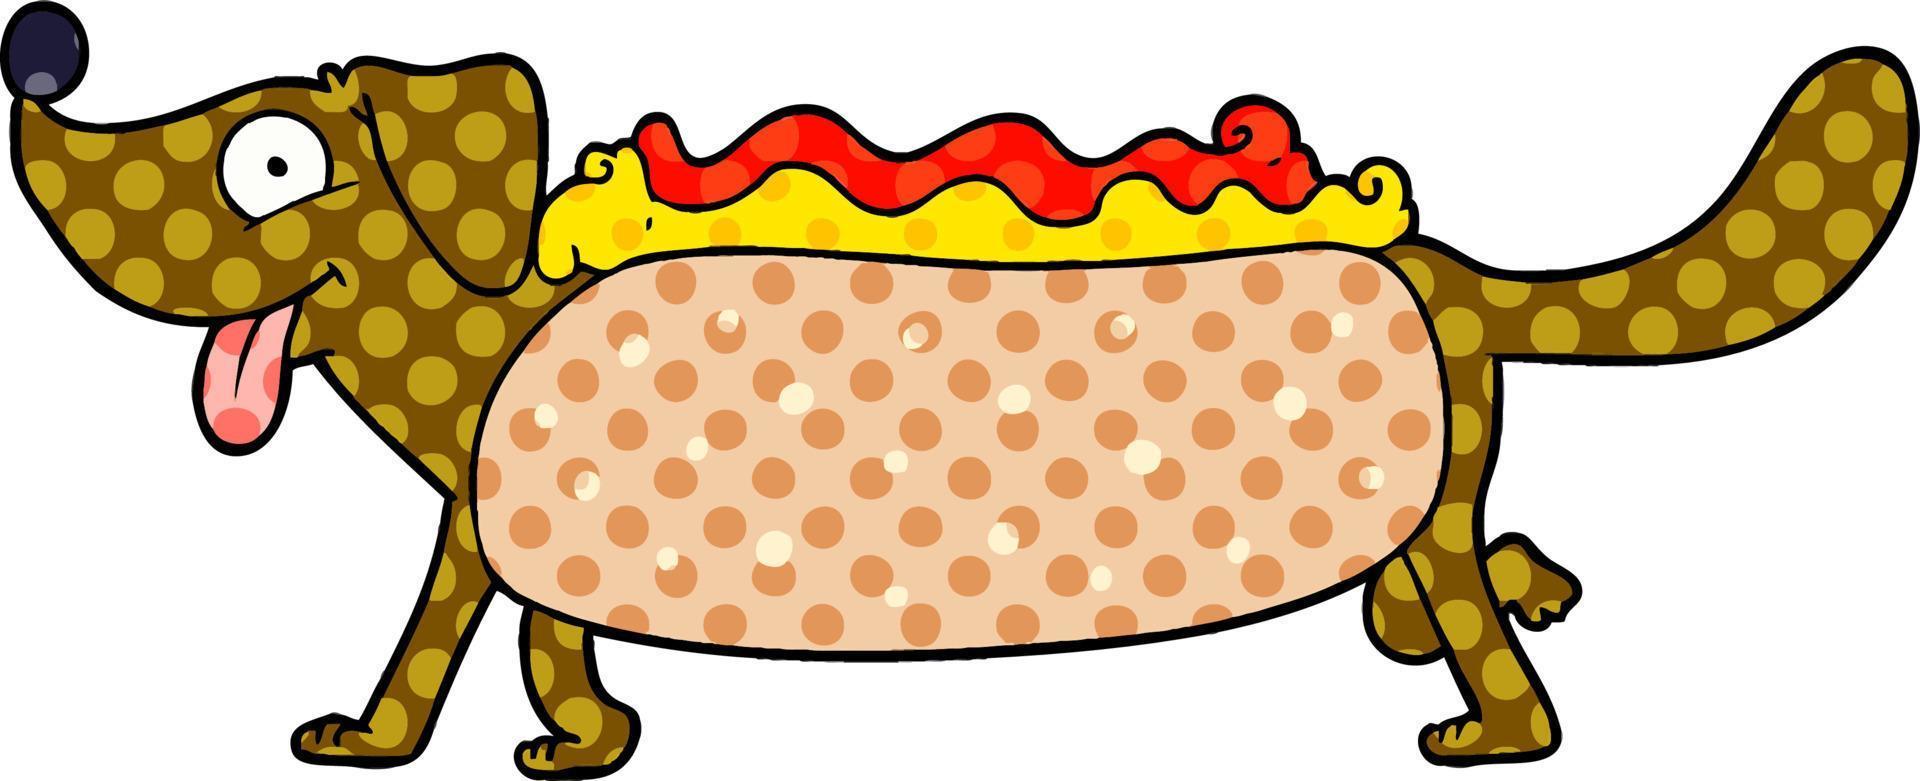 cartoon hotdog character vector